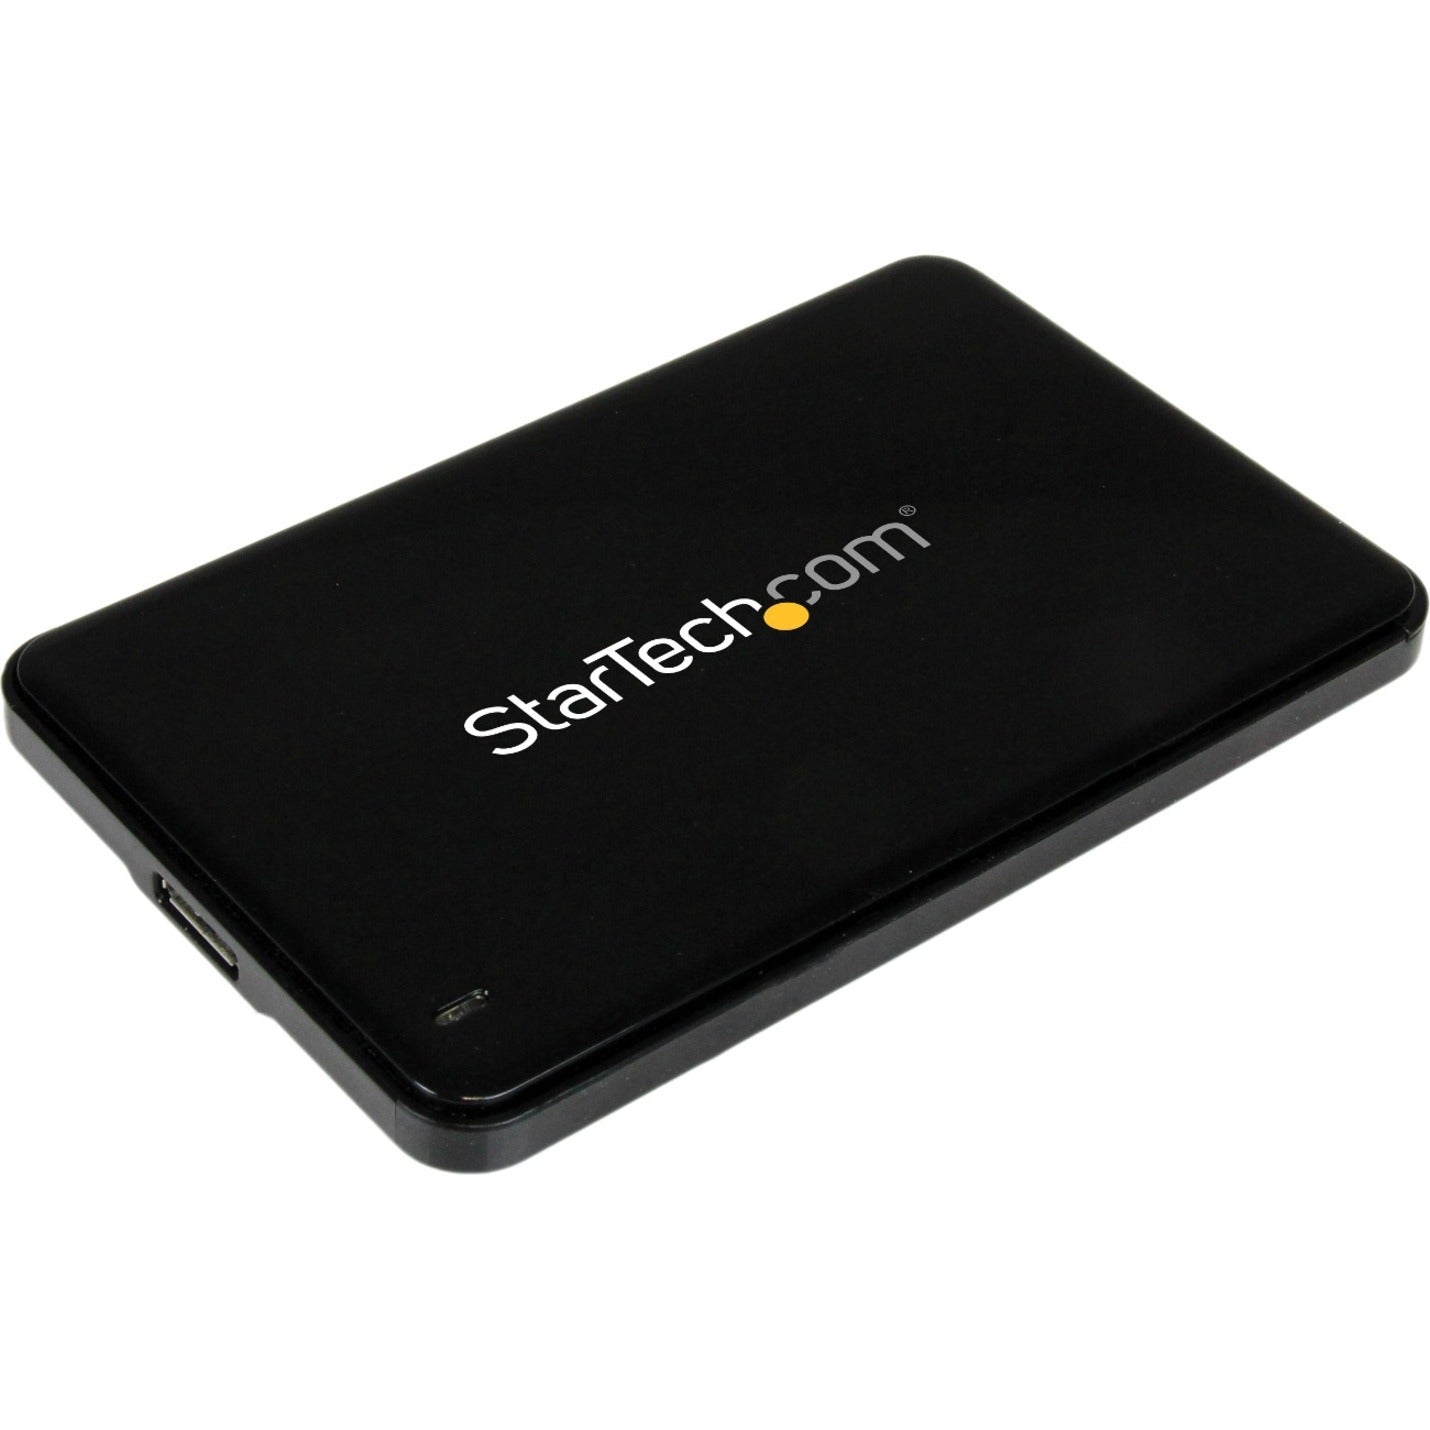 Marca: StarTech.com Carcasa de unidad de disco duro SATA USB 3.0 de 2.5 pulgadas con UASP SSD/HDD SATA III delgado de 7 mm Transferencia rápida de datos